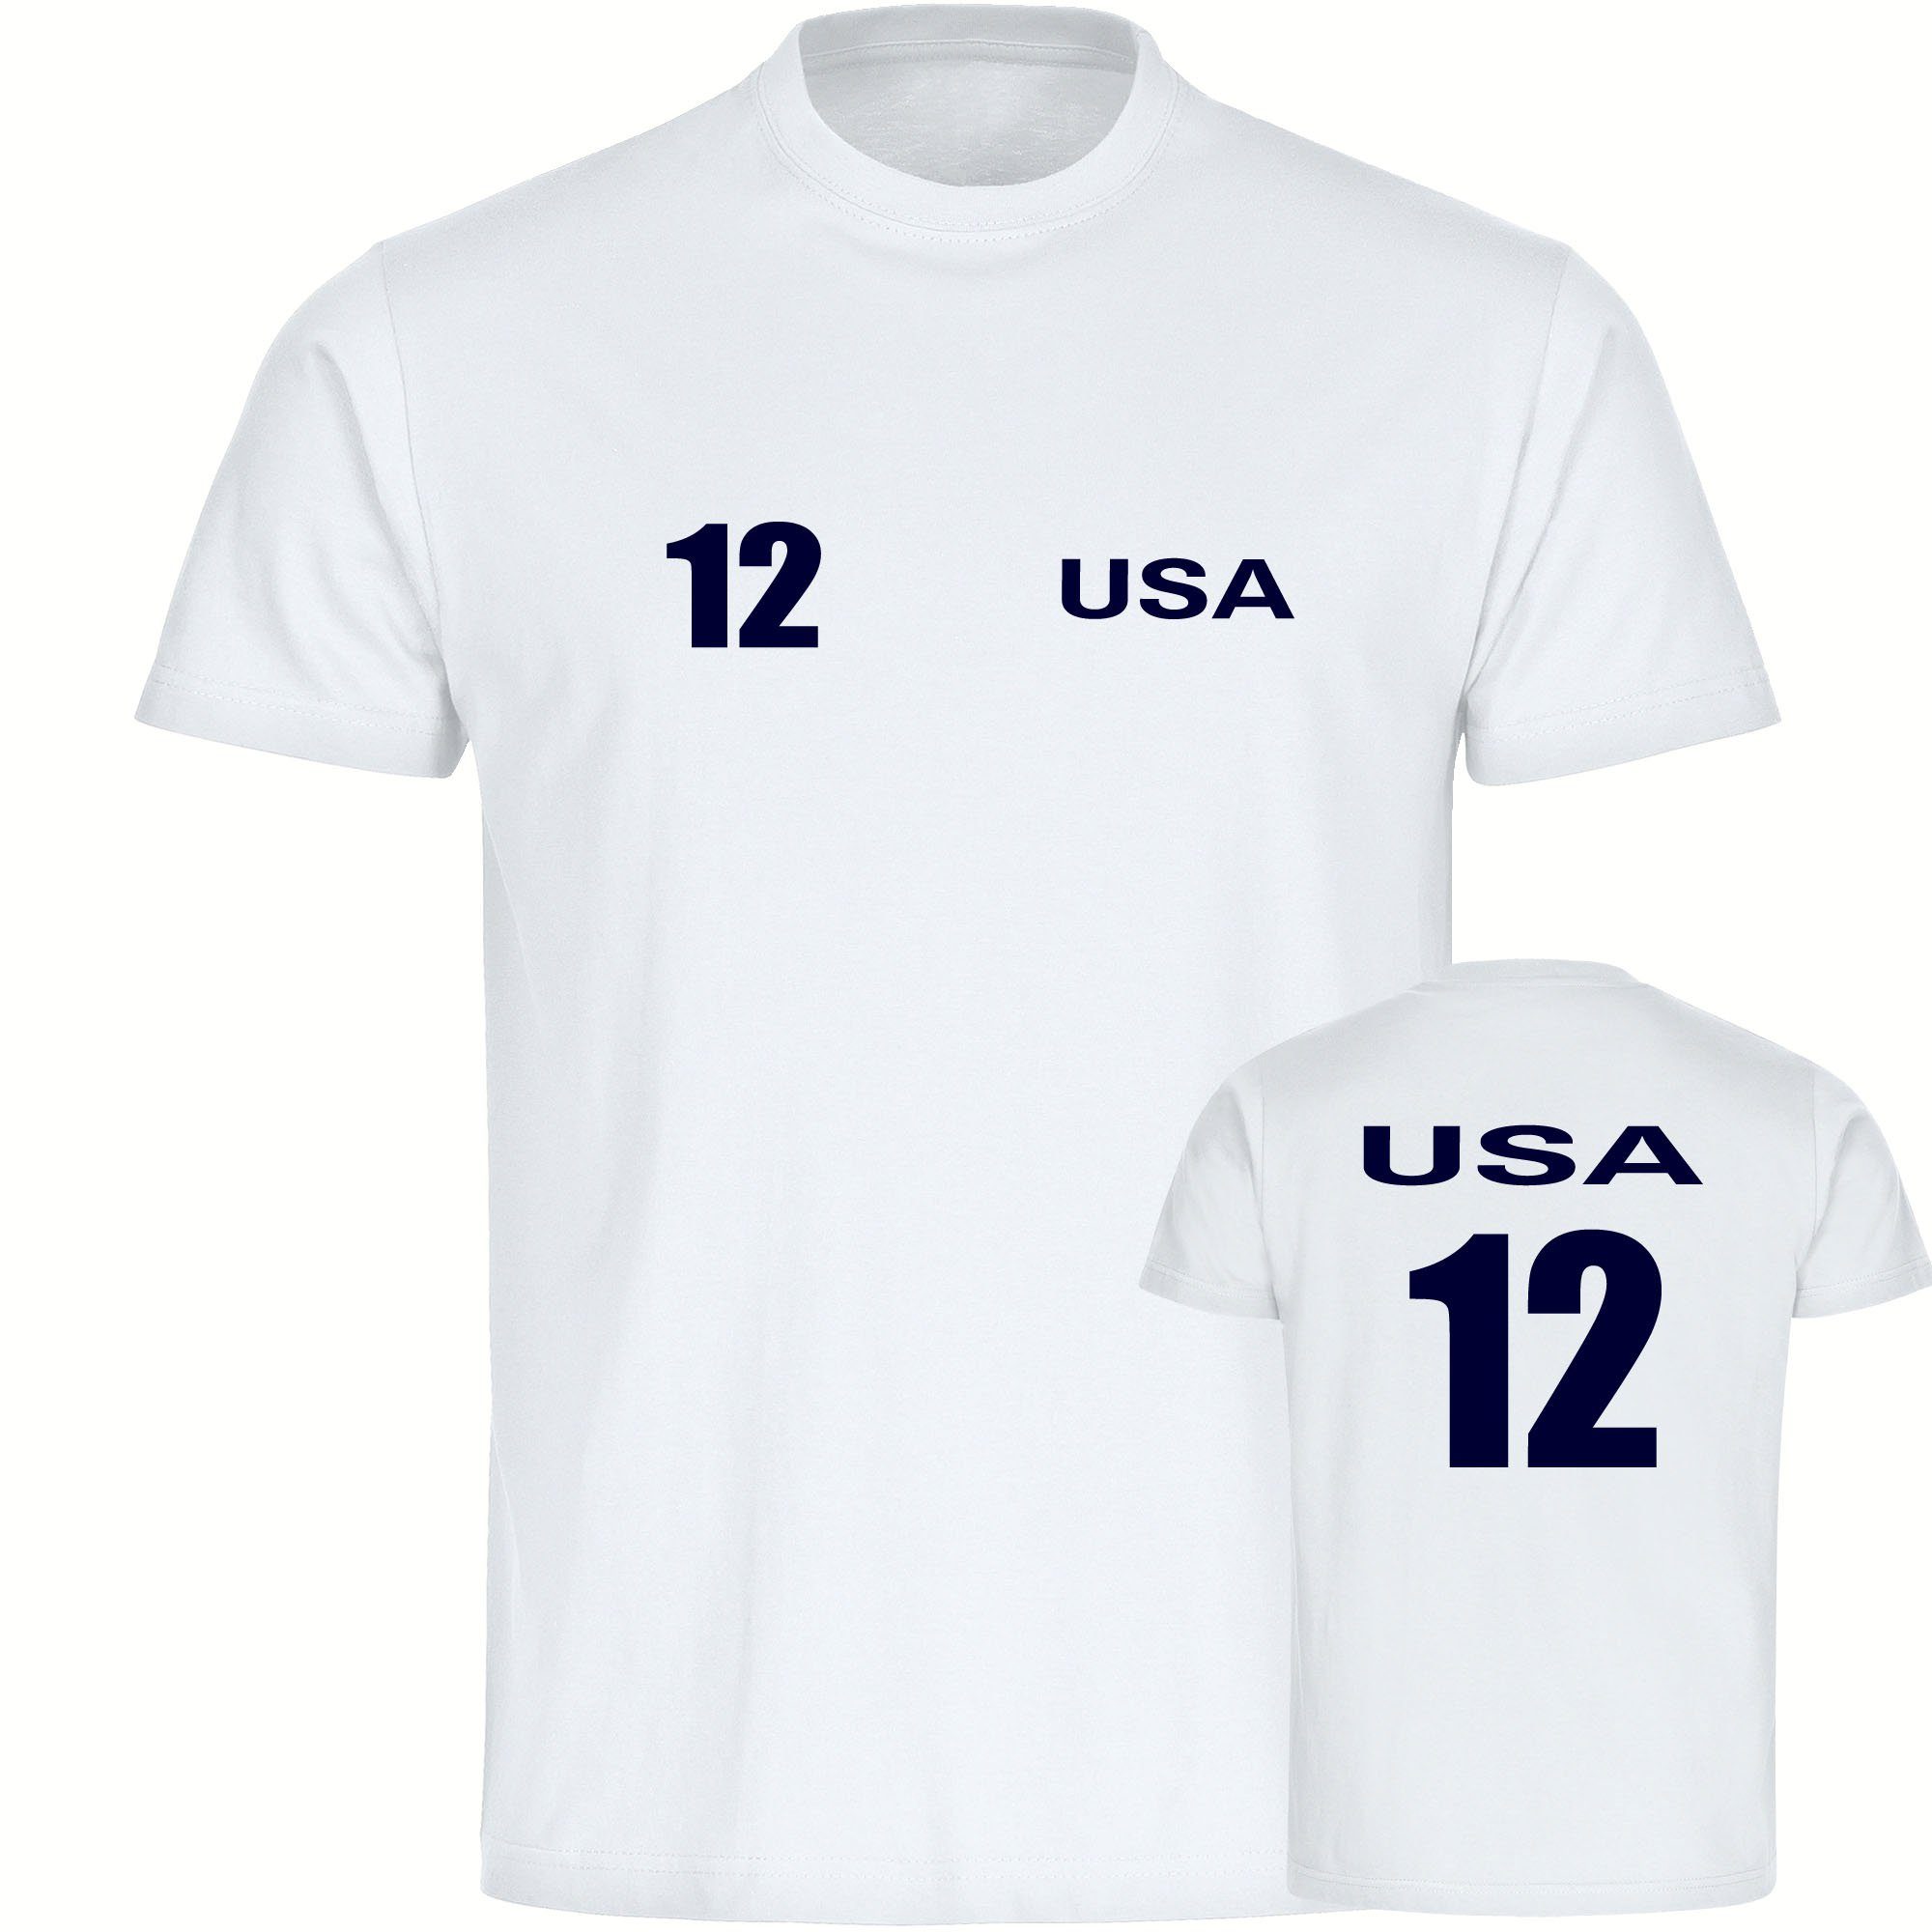 multifanshop T-Shirt Kinder USA - Trikot 12 - Jungen Mädchen Shirt Fanartikel